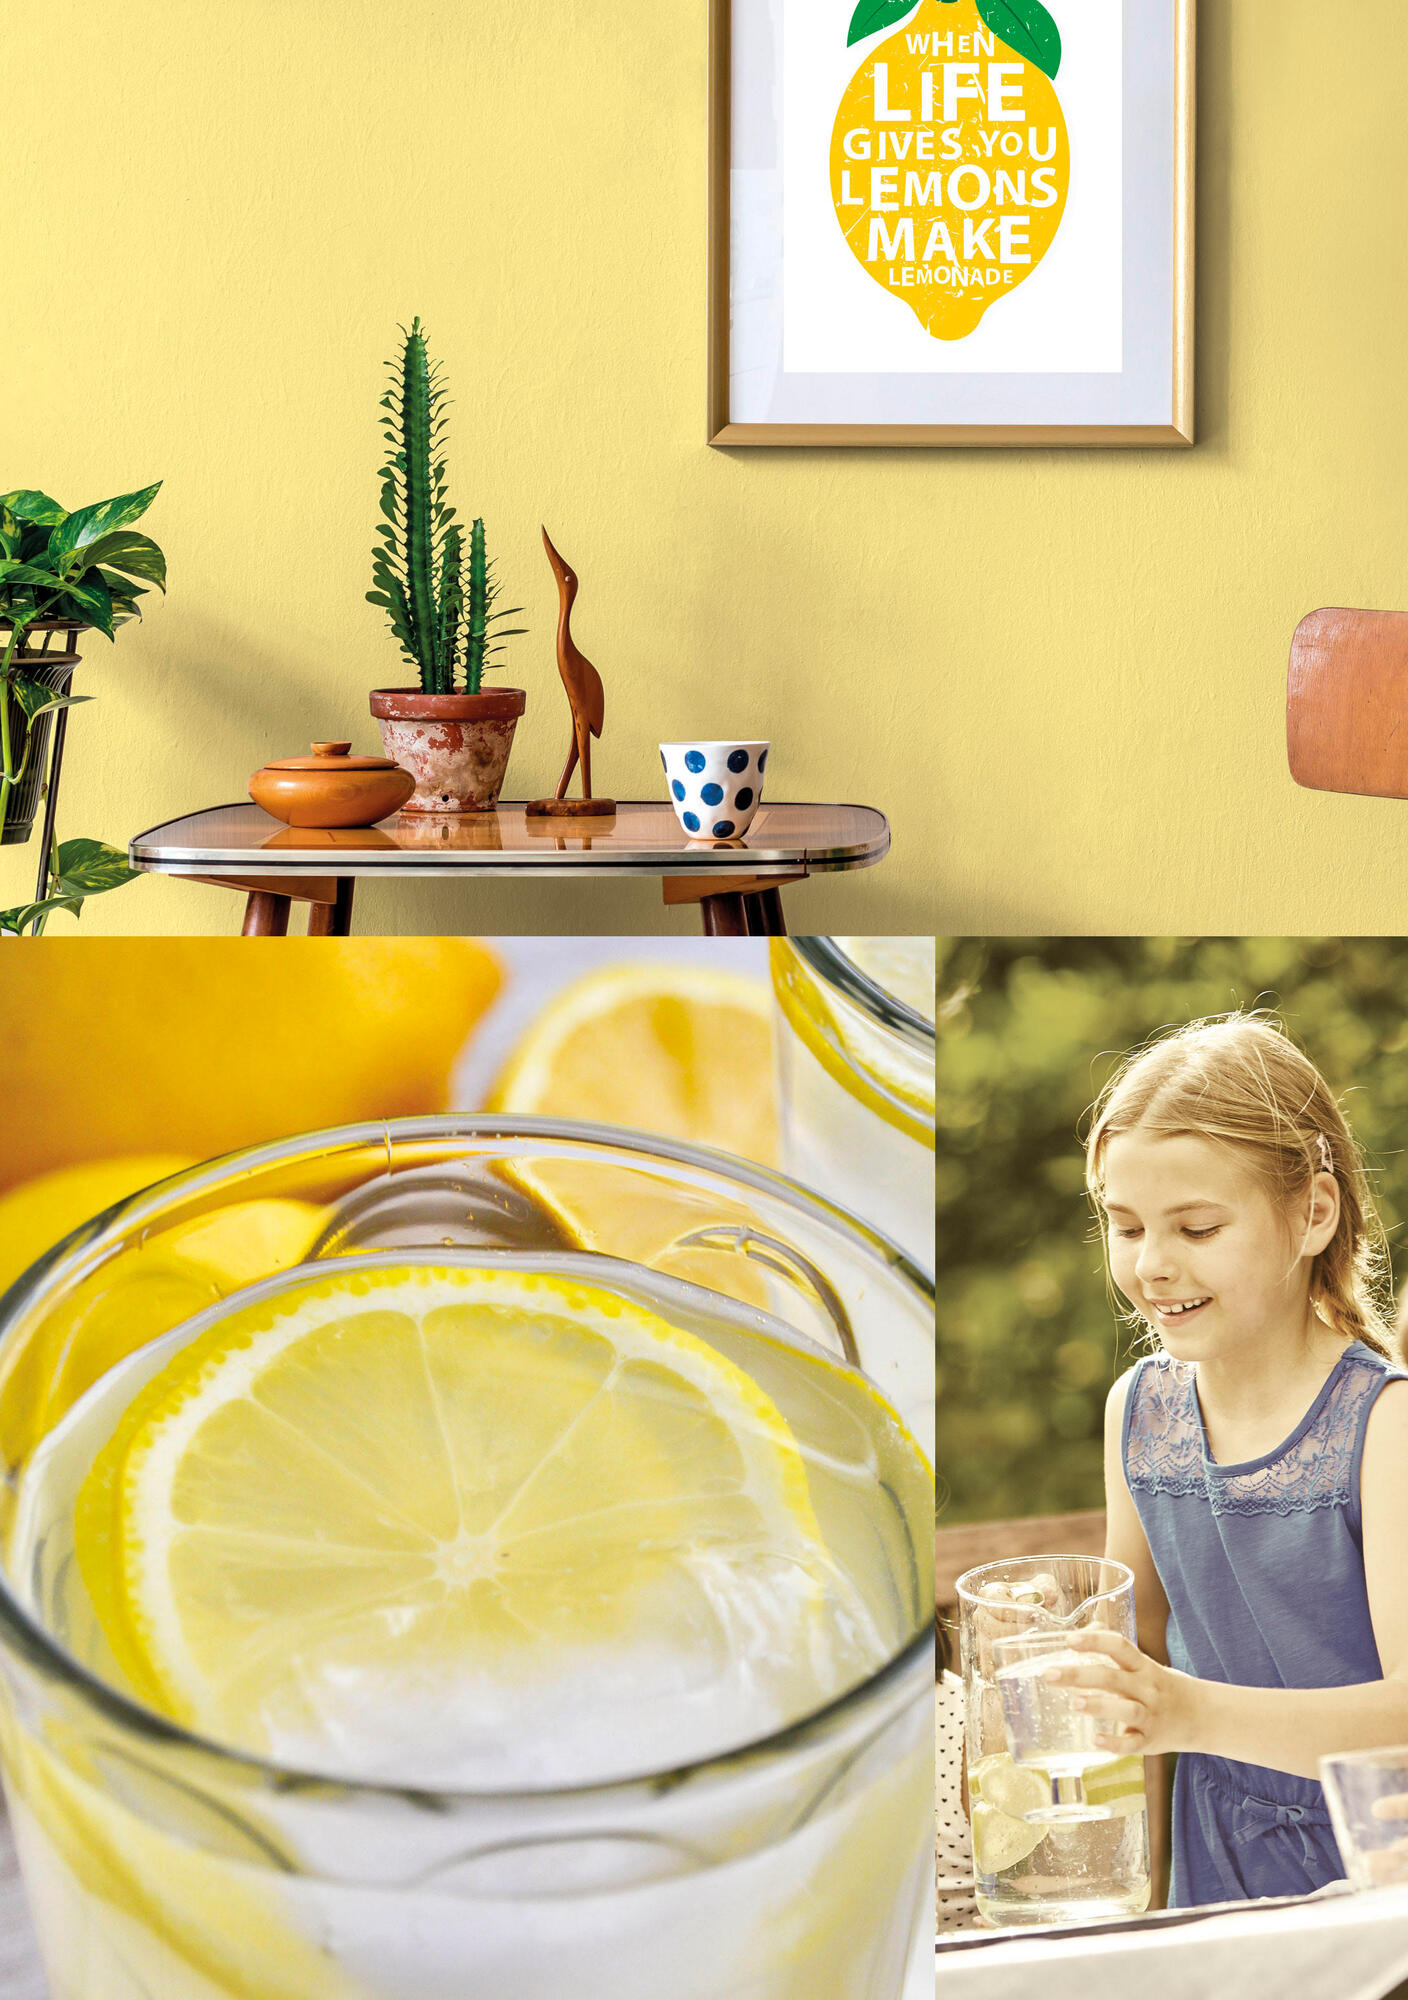 31. Making lemonade